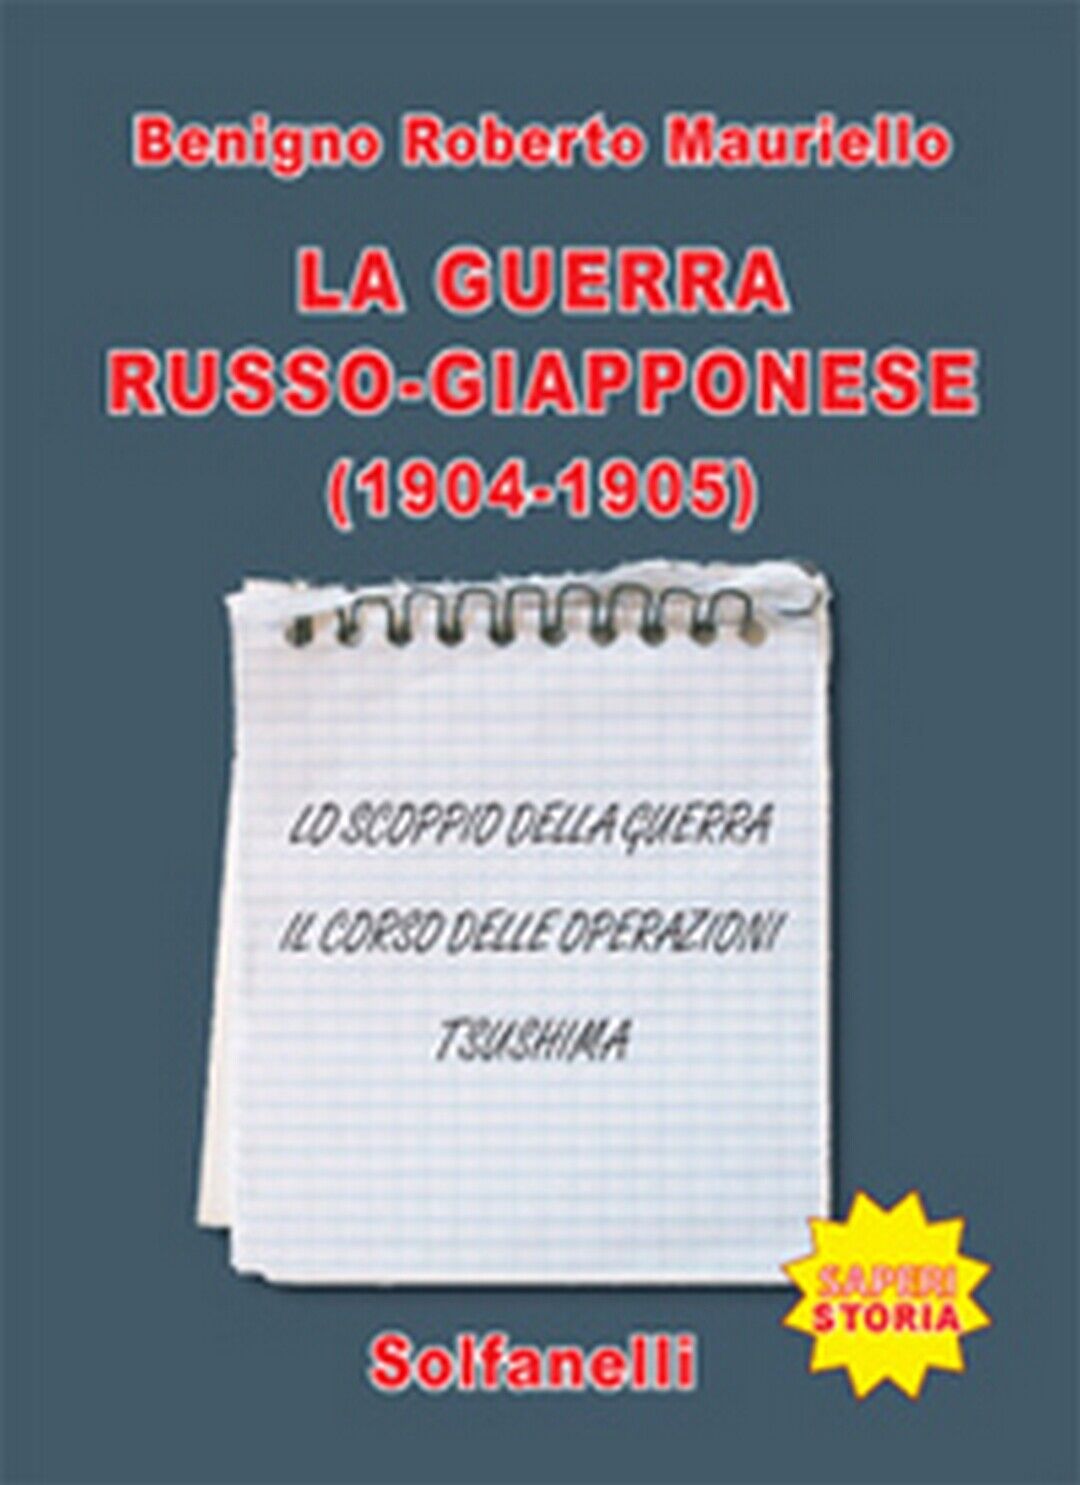 LA GUERRA RUSSO-GIAPPONESE (1904-1905). Benigno Roberto Mauriello,  Solfanelli